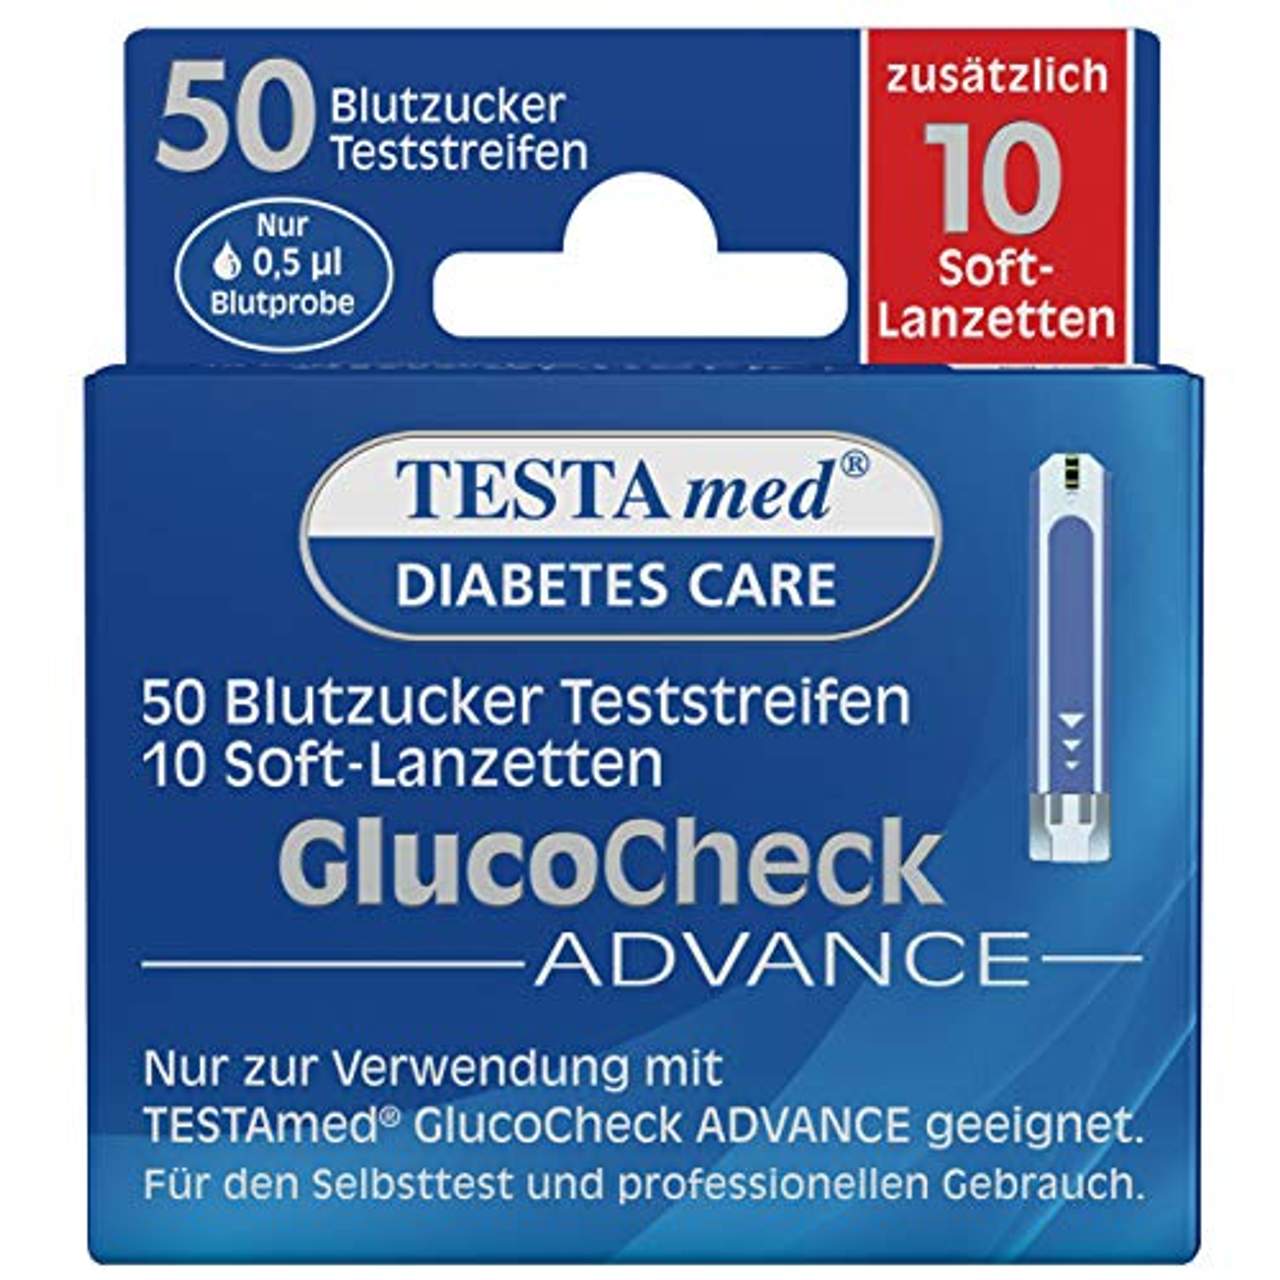 TESTAmed GlucoCheck Advance Blutzuckerteststreifen plus Soft-Lanzetten